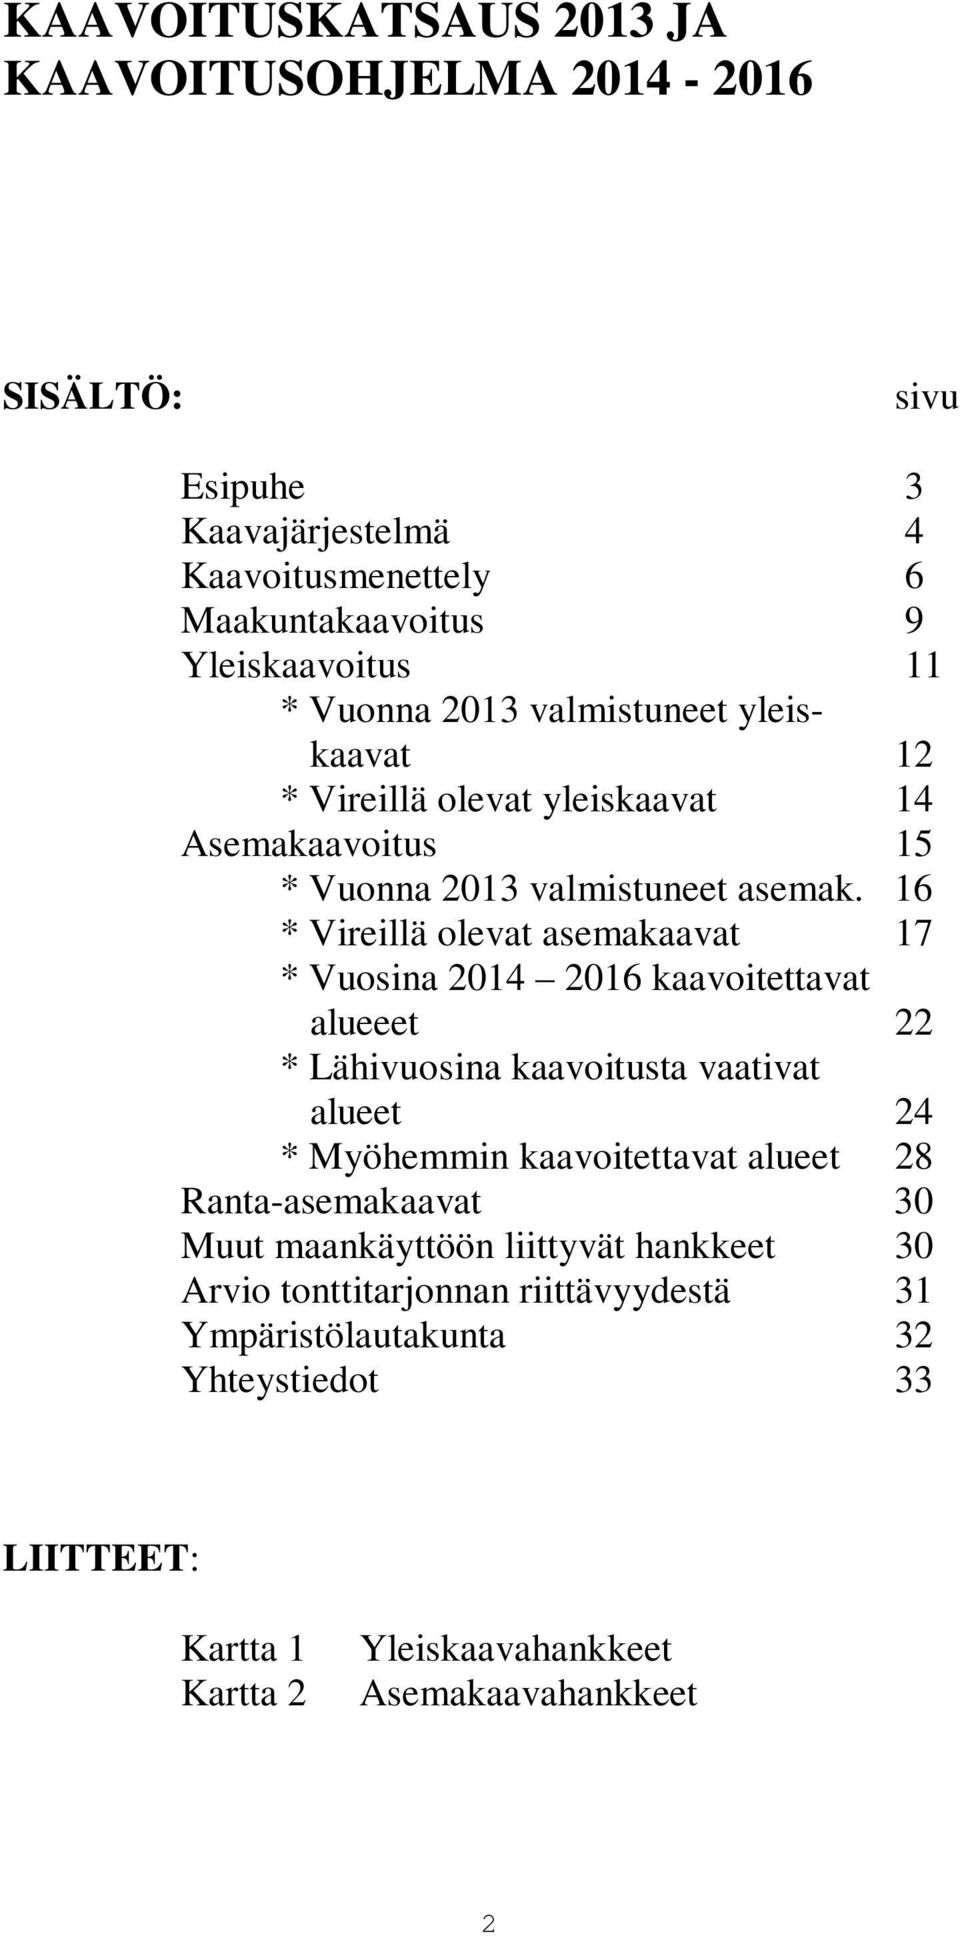 16 * Vireillä olevat asemakaavat 17 * Vuosina 2014 2016 kaavoitettavat alueeet 22 * Lähivuosina kaavoitusta vaativat alueet 24 * Myöhemmin kaavoitettavat alueet 28